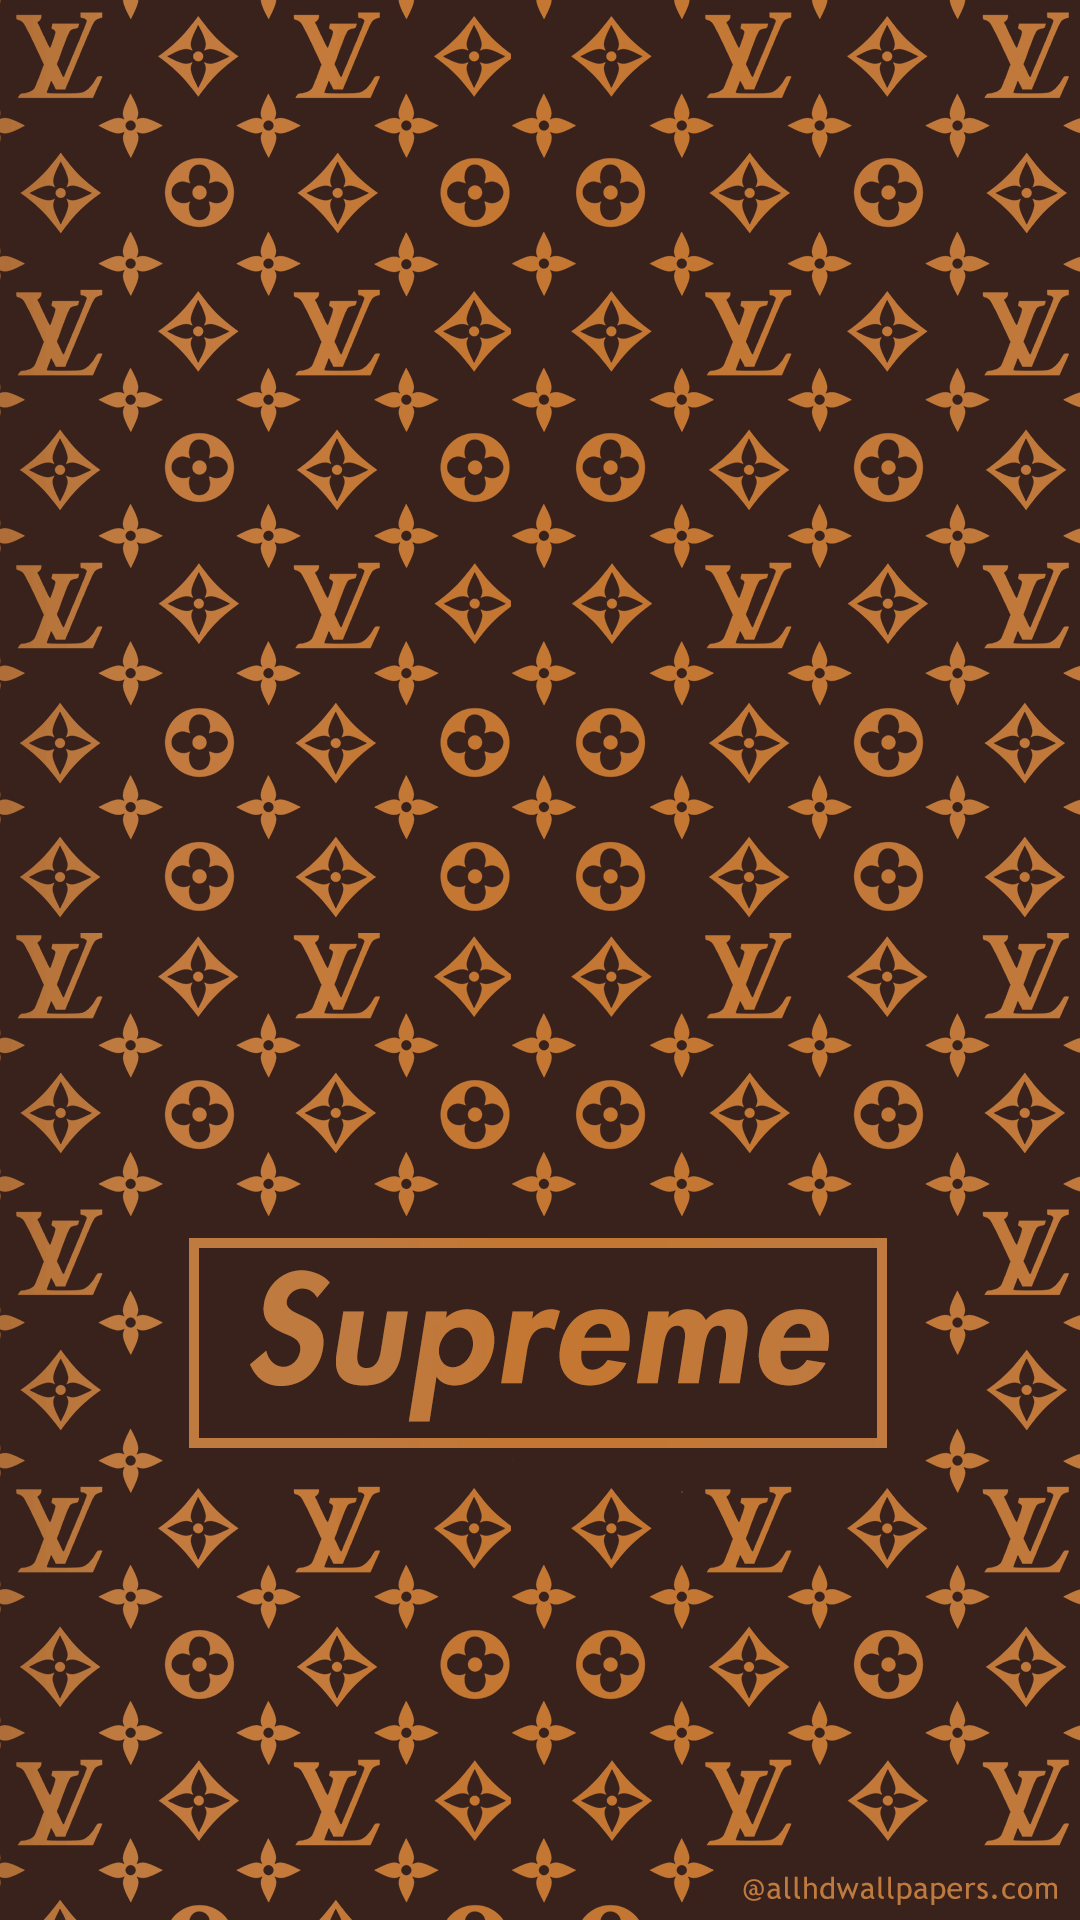 24+] Supreme LV Wallpapers